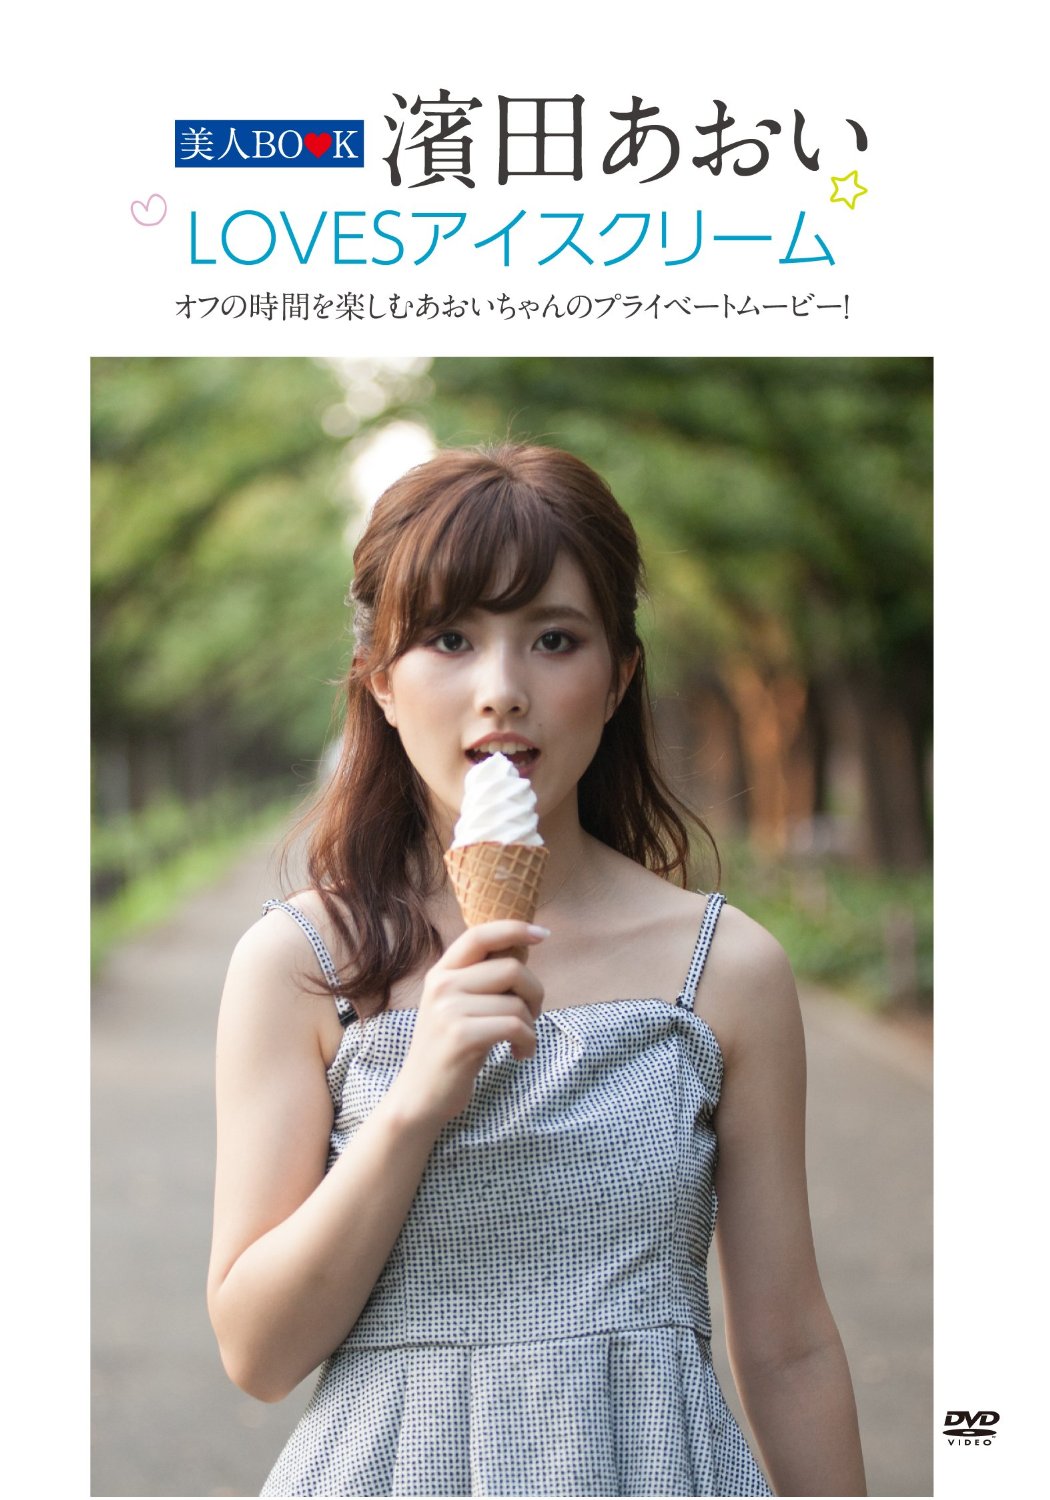 【通常盤】美人BOOK 濱田あおい LOVESアイスクリーム [DVD]